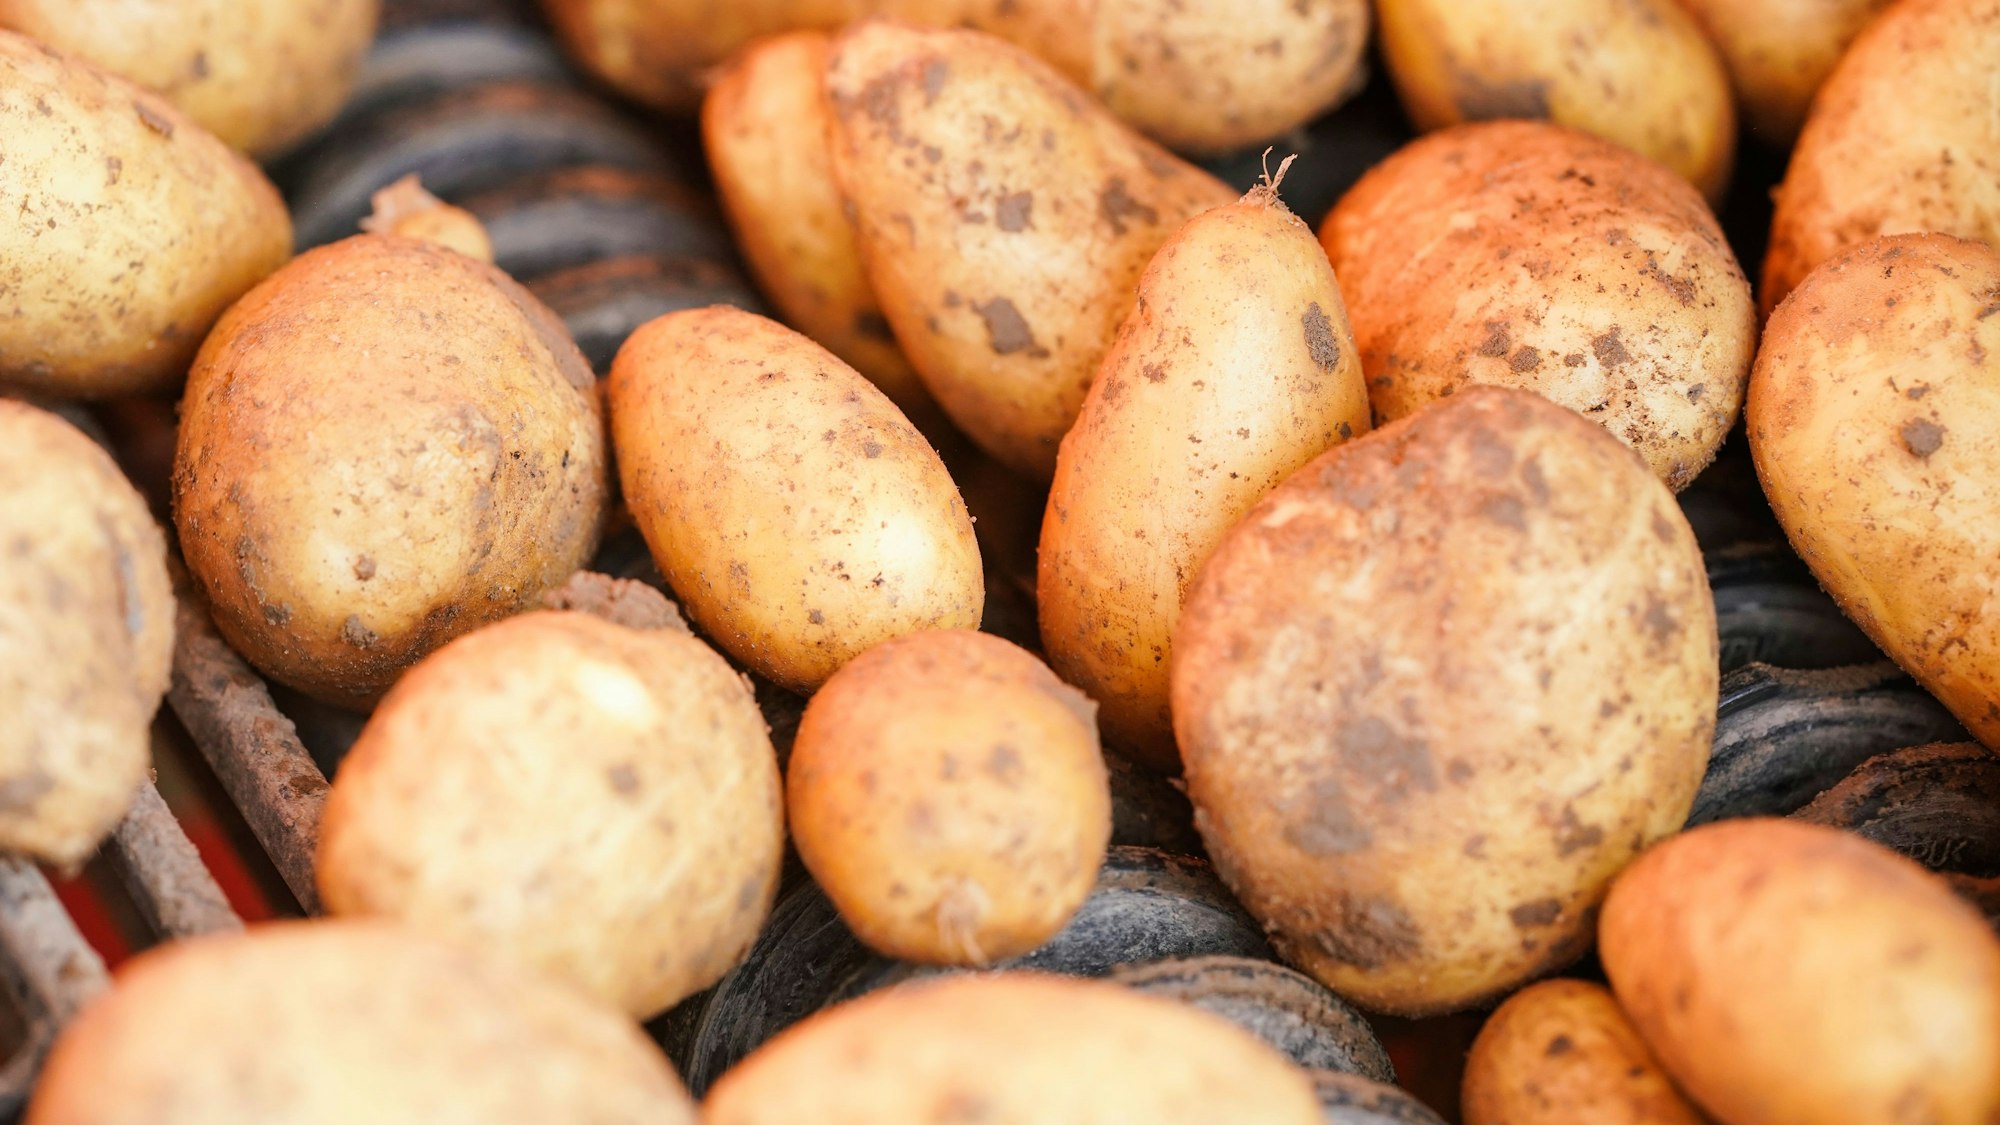 Kartoffeln liegen bei der Ernte auf einem Förderband.